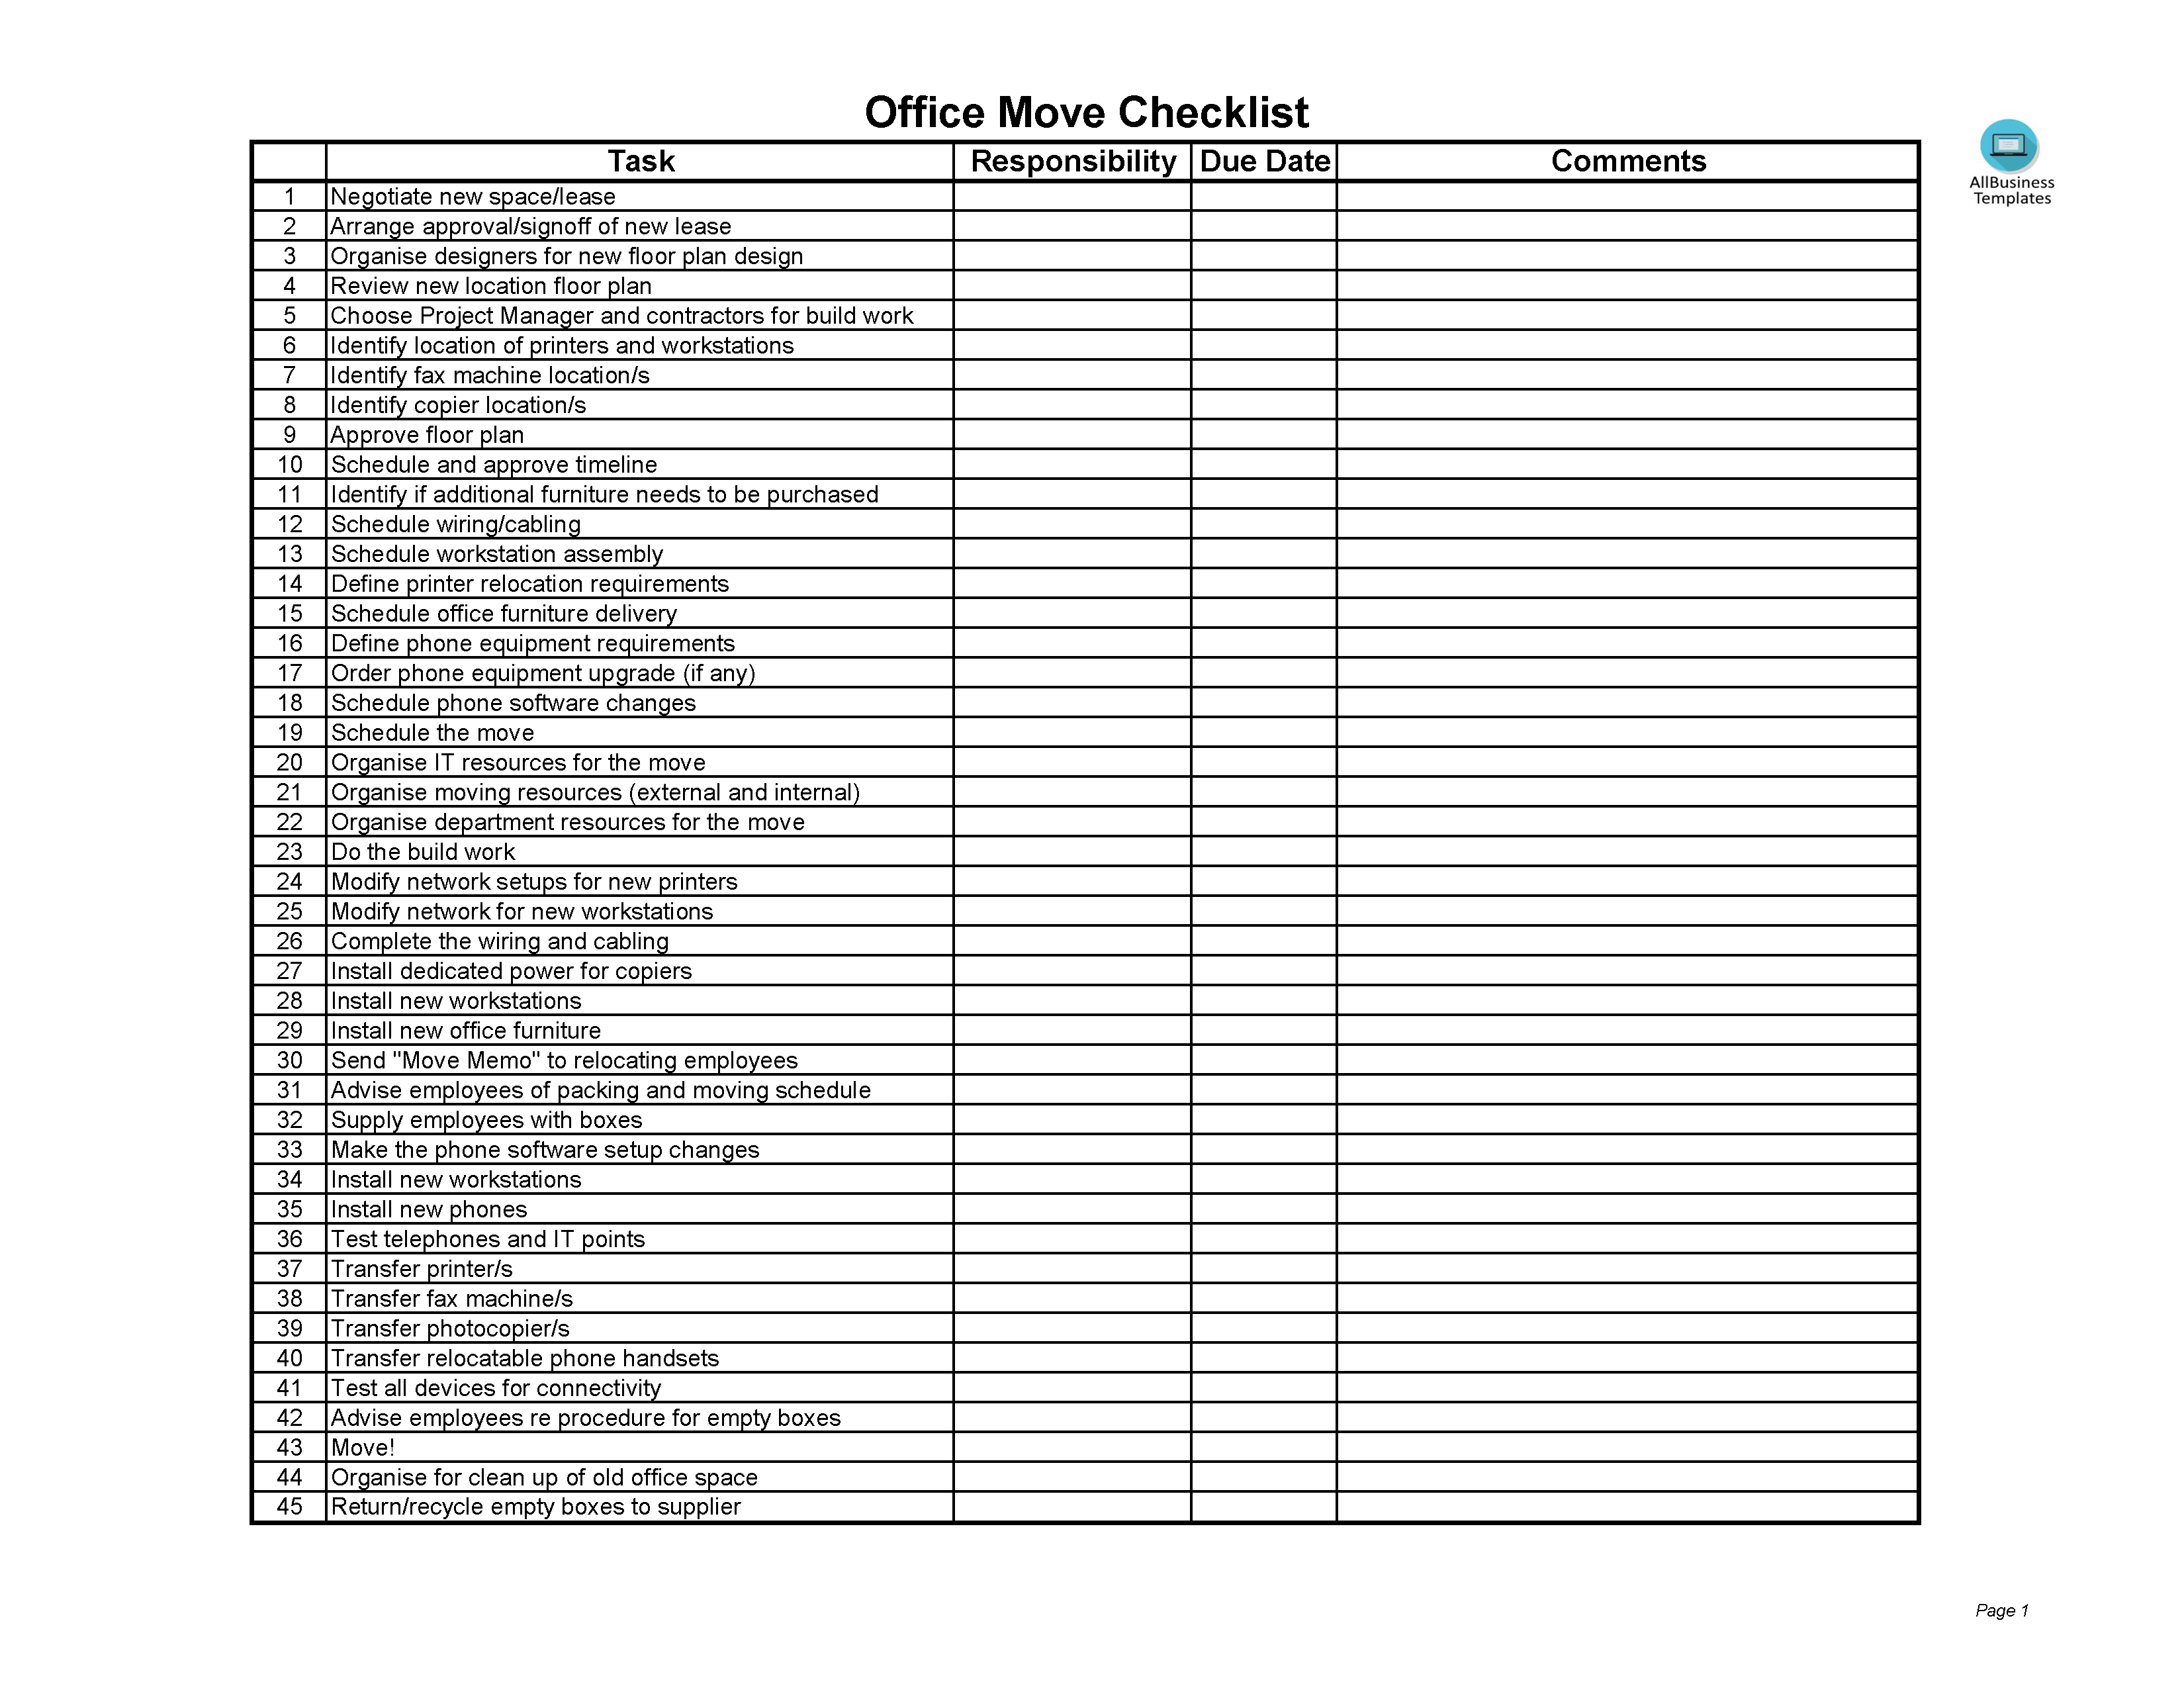 Office Move Checklist Excel 模板